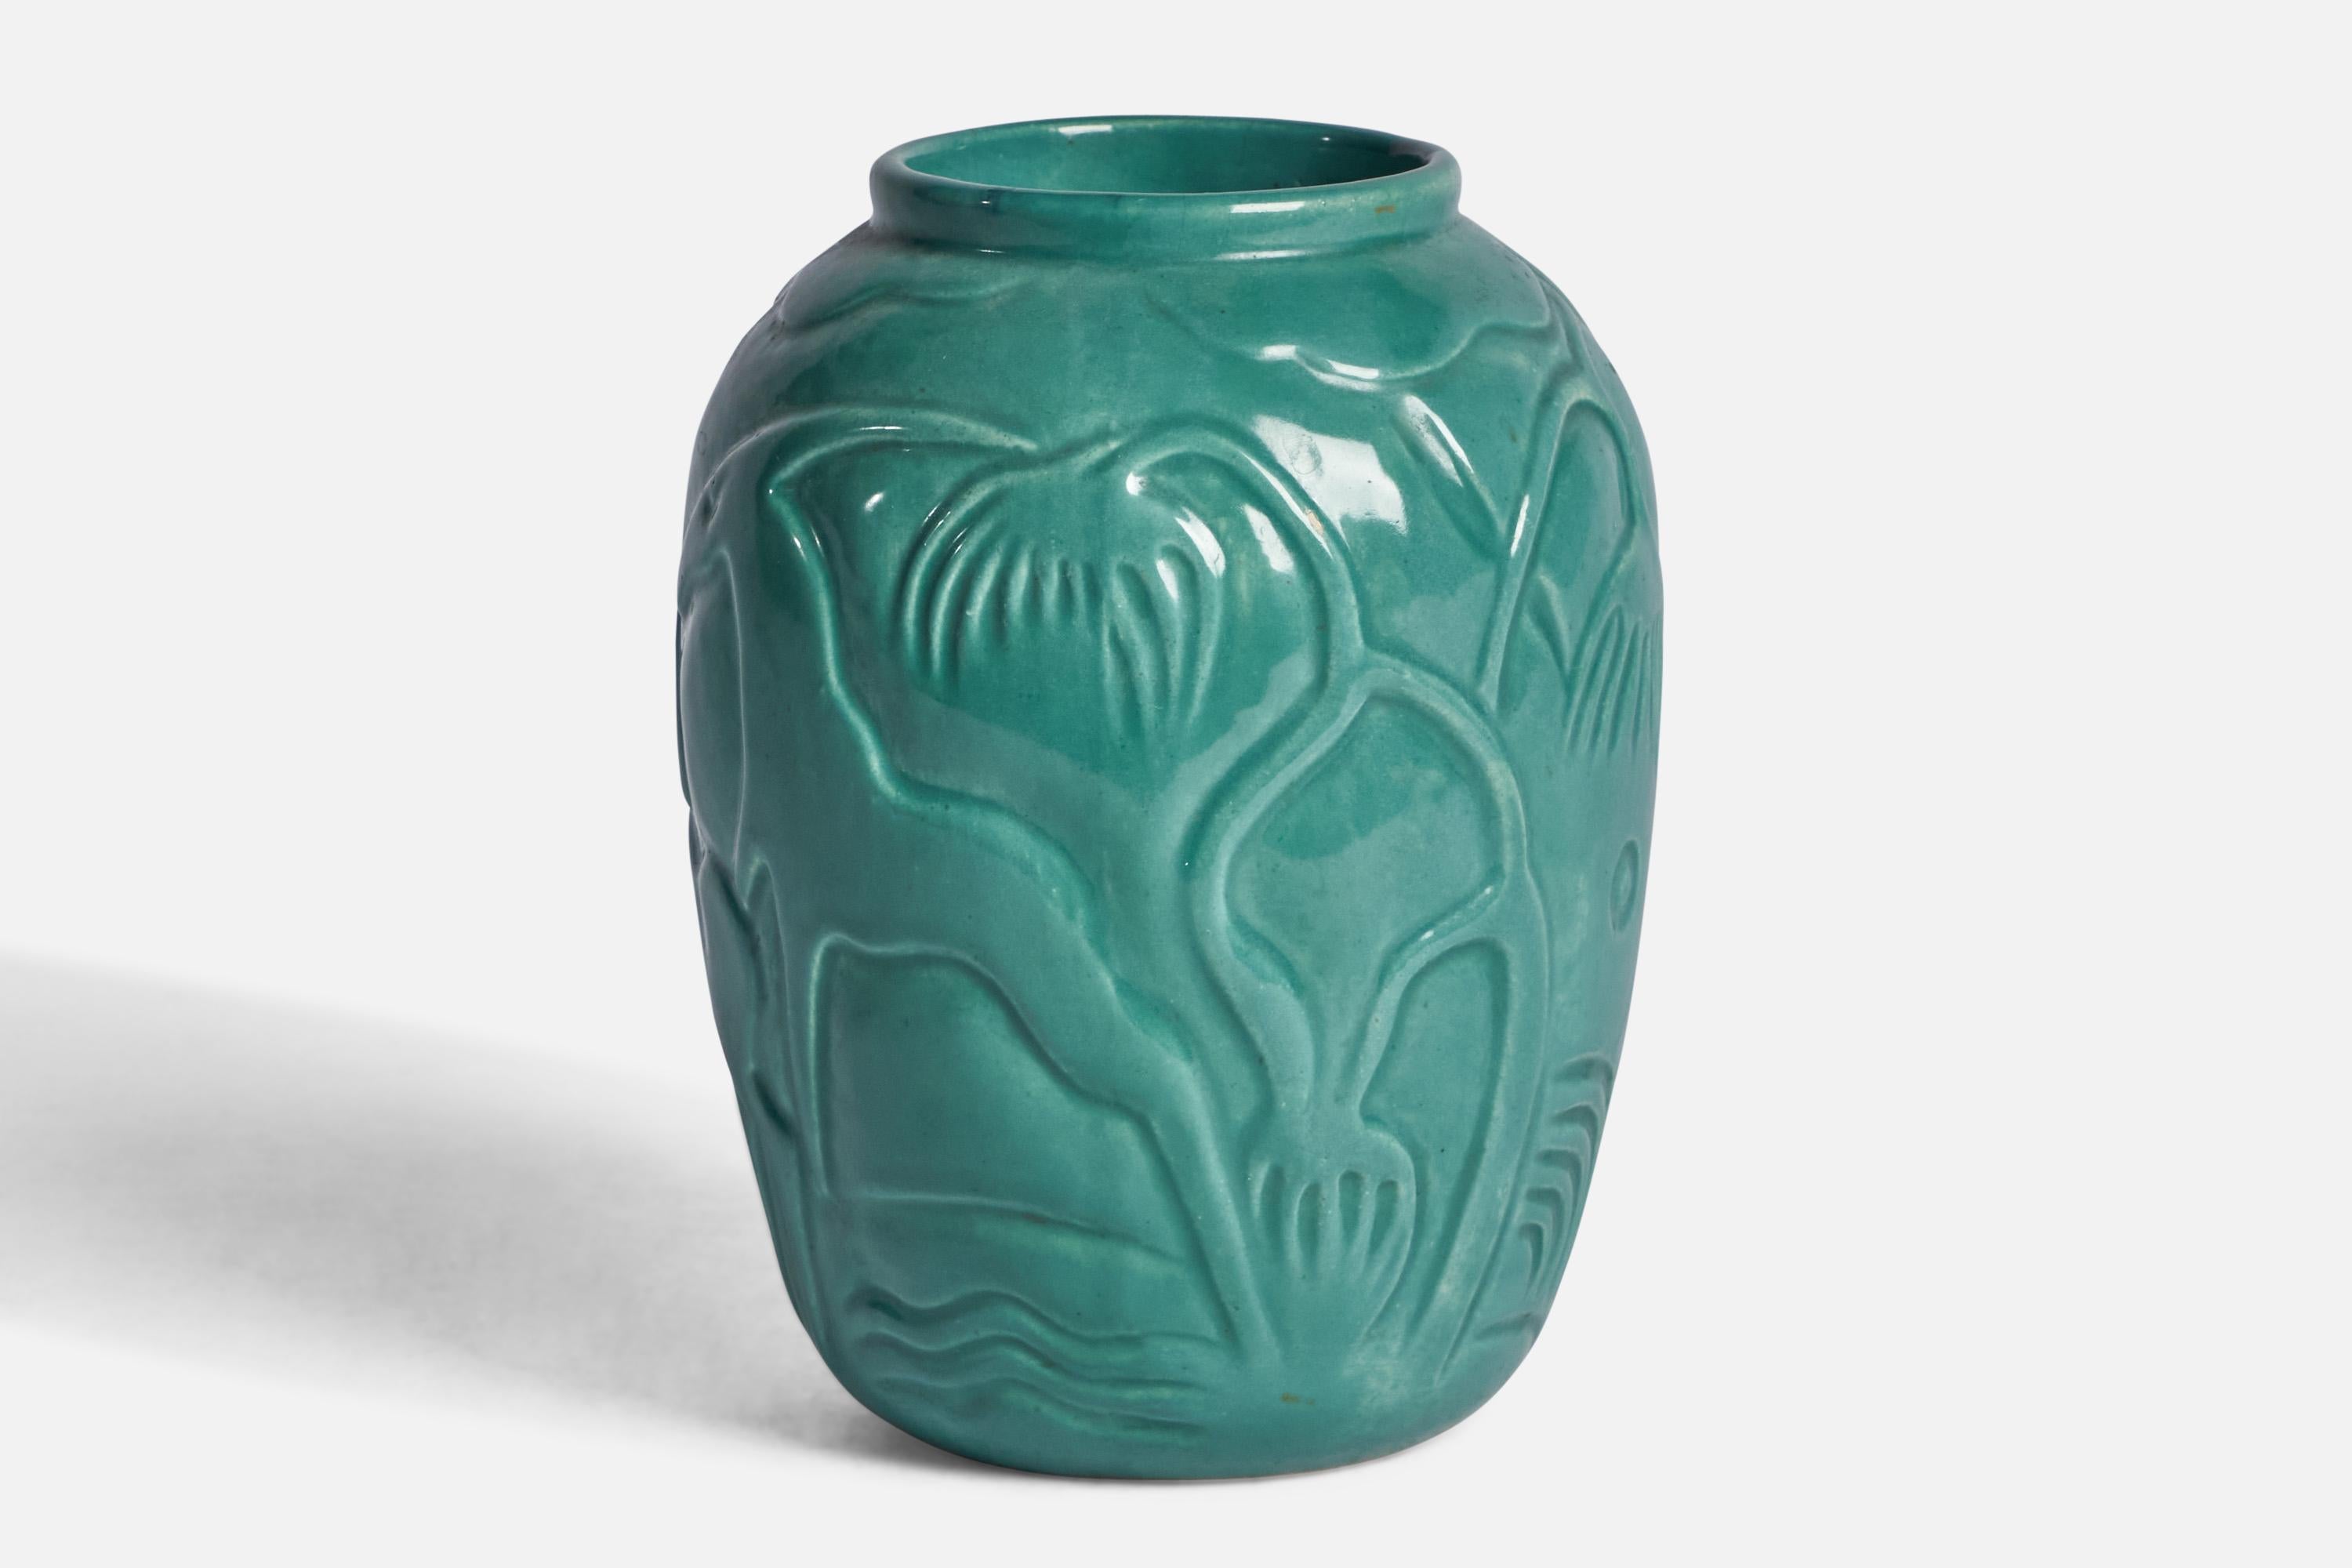 syco sweden keramik